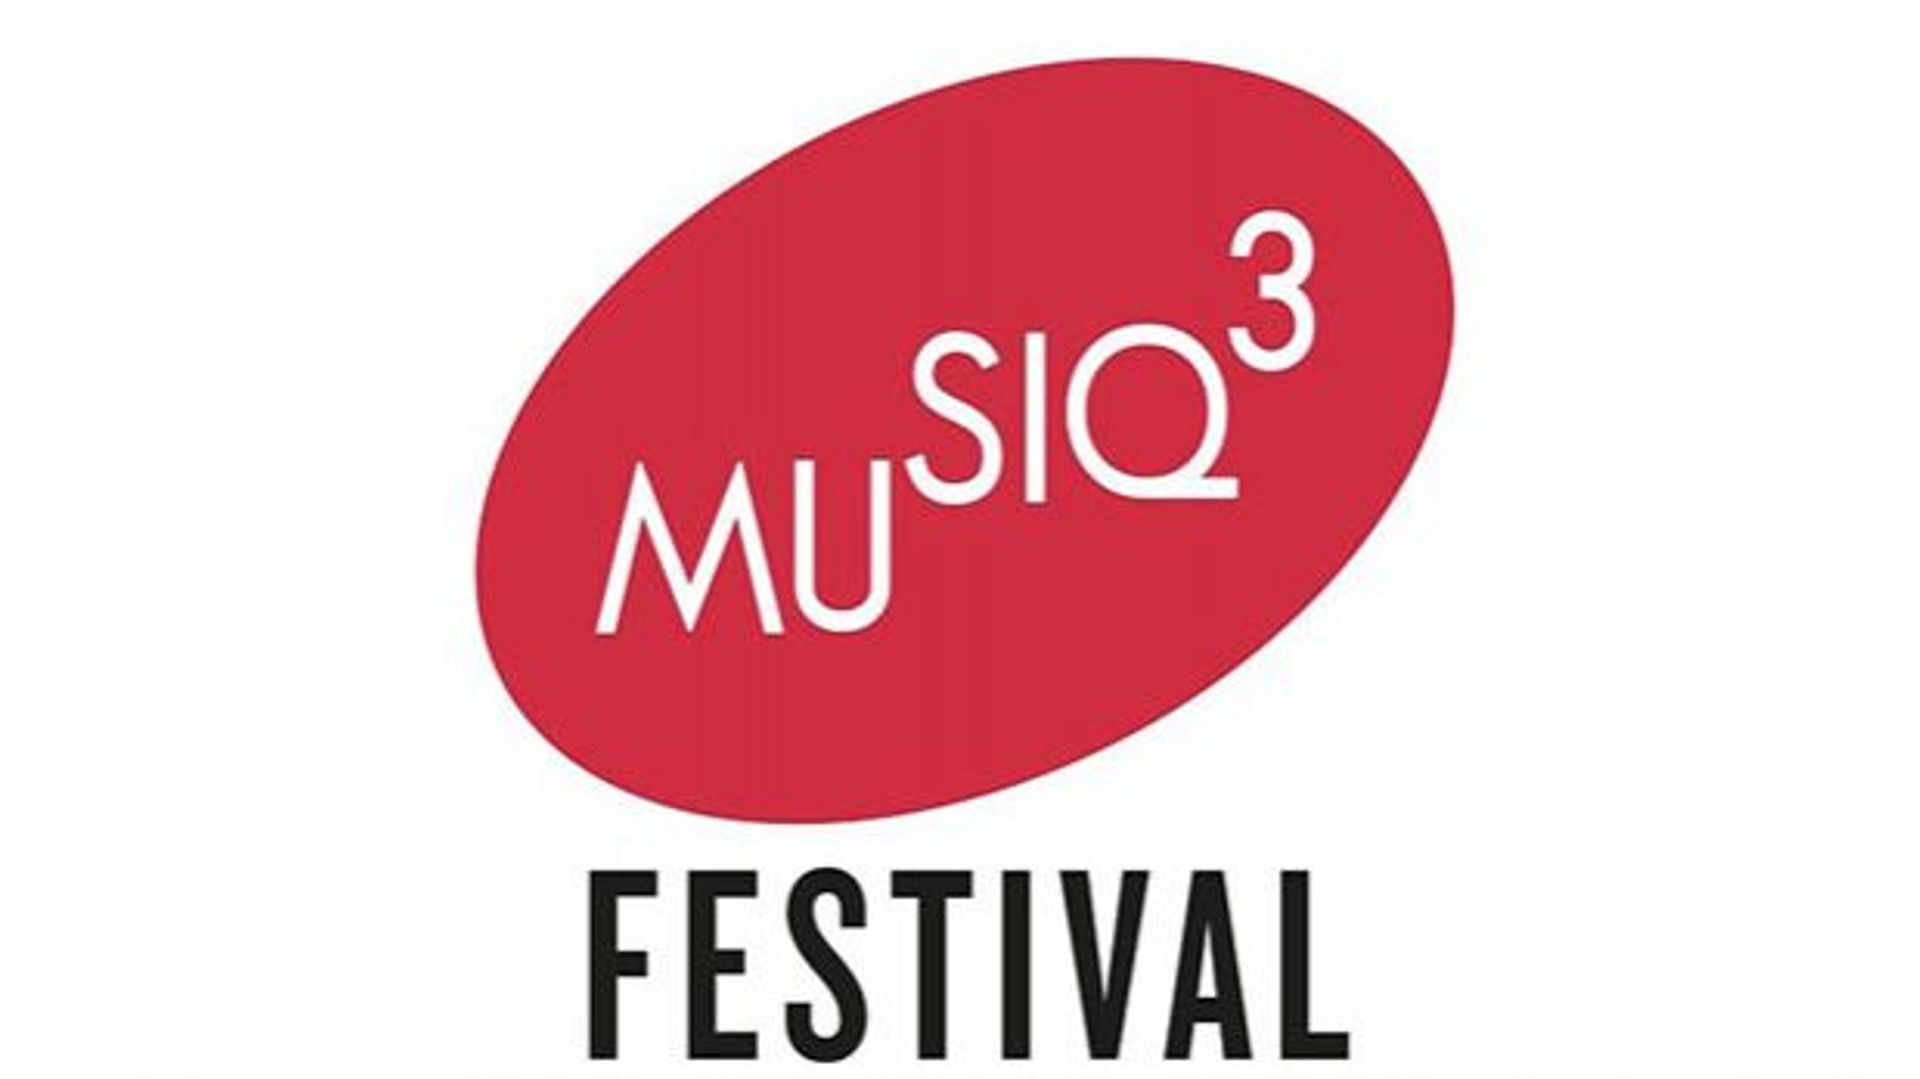 Le Festival Musiq'3 présente sa 7ème édition : TOUCH